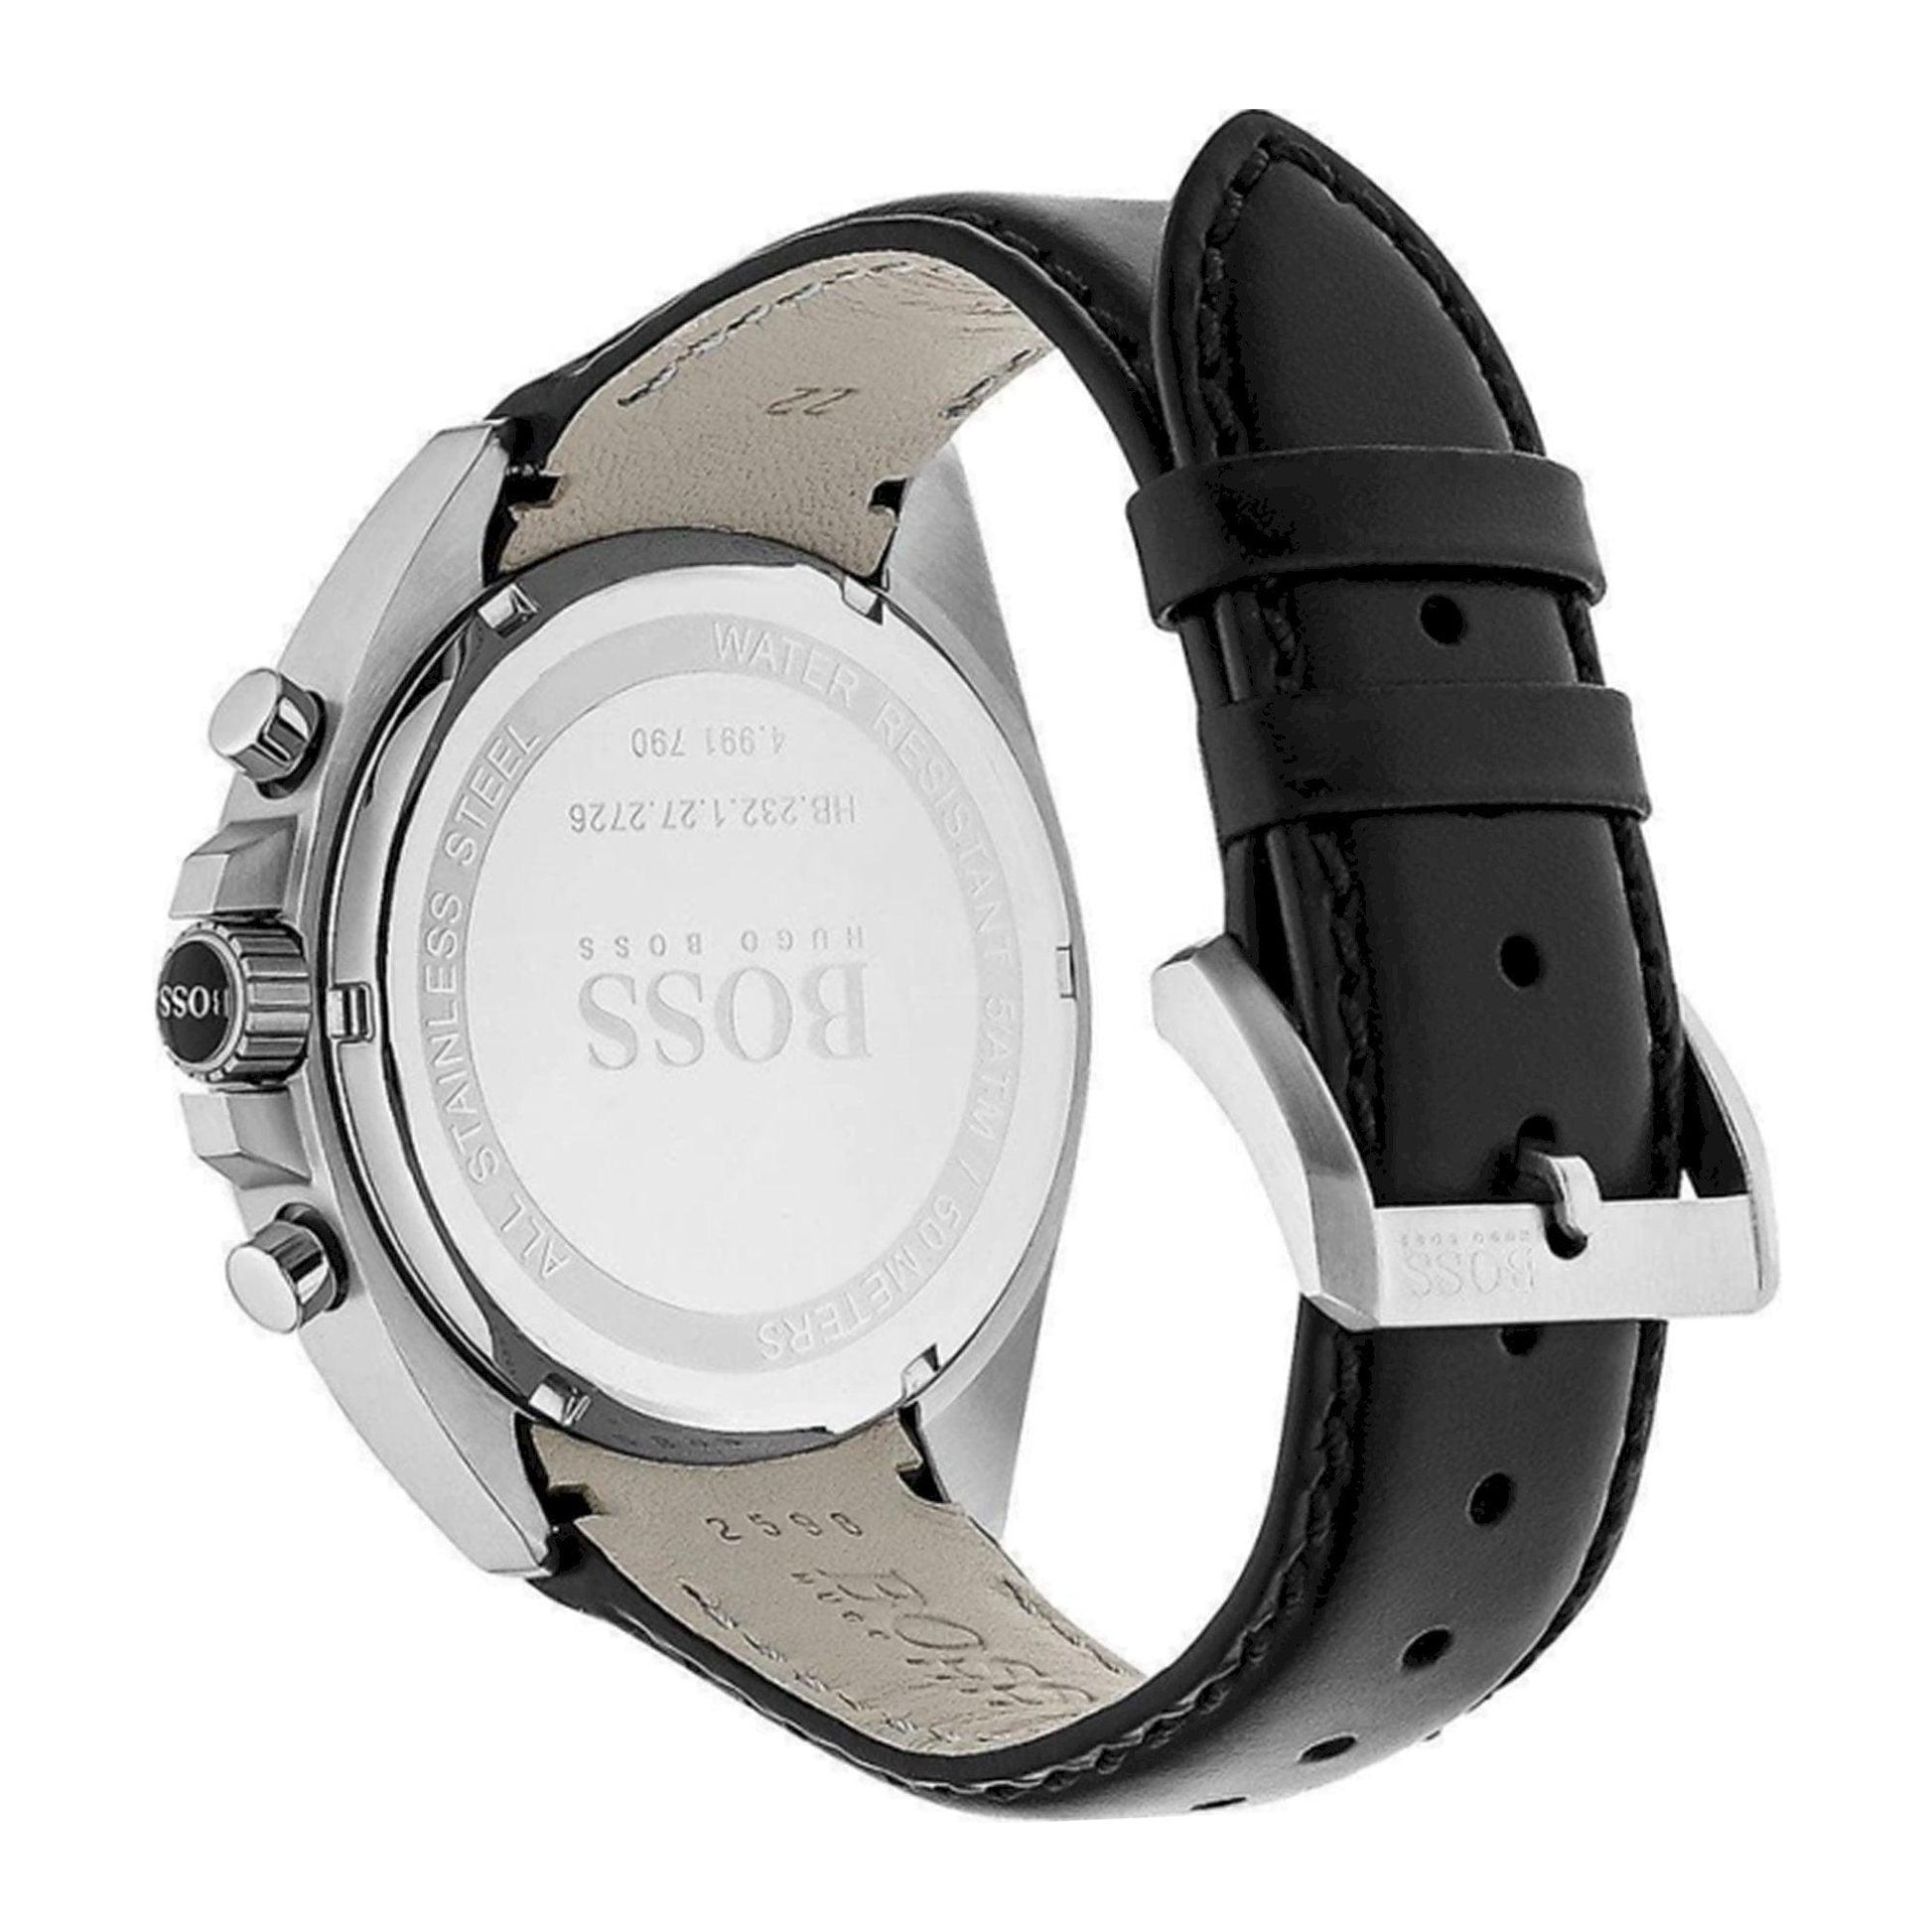 Hugo Boss Driver HB1513085 orologio uomo al quarzo - Kechiq Concept Boutique